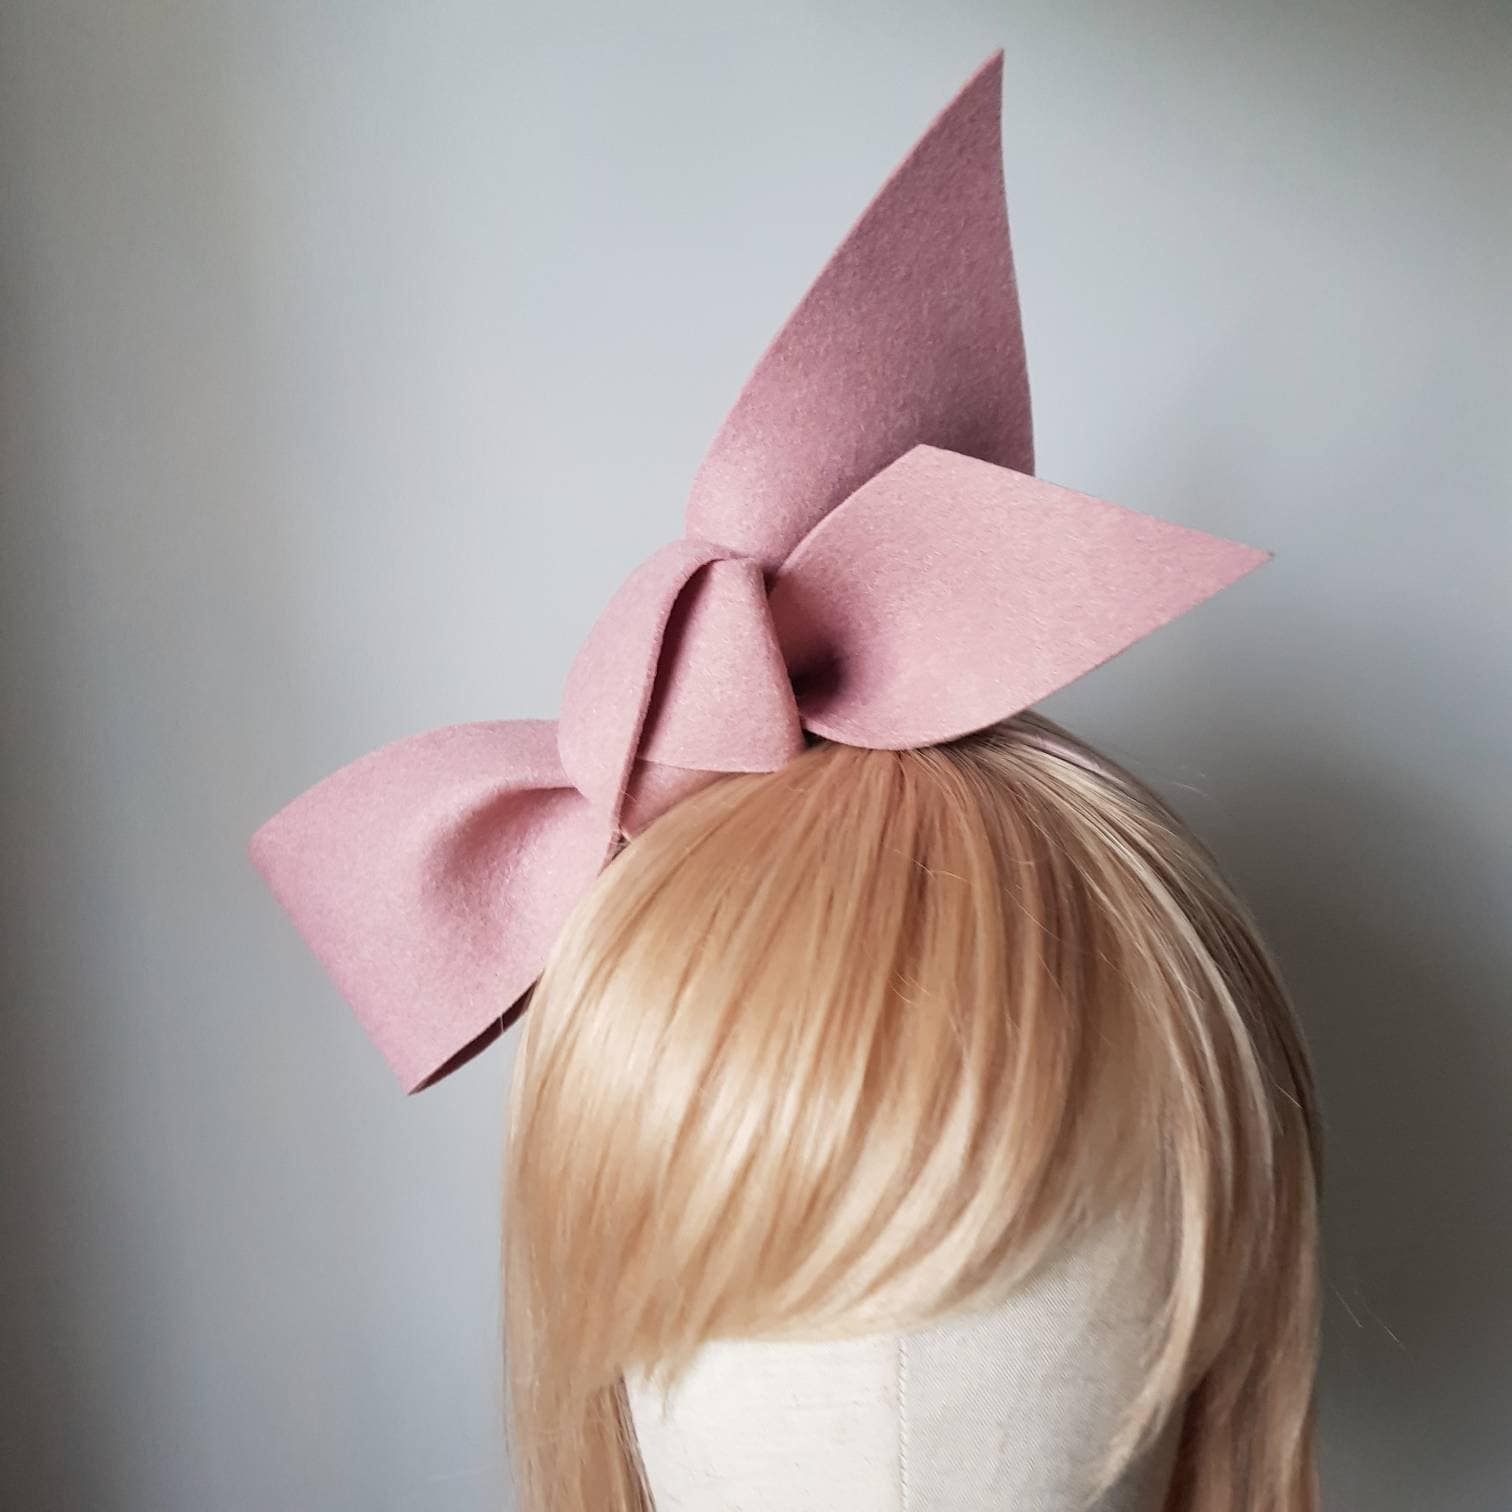 Simply Modern Fascinator blush pink felt bow headband statement headpiece hair accessories wedding hat fascinate big structured Australia